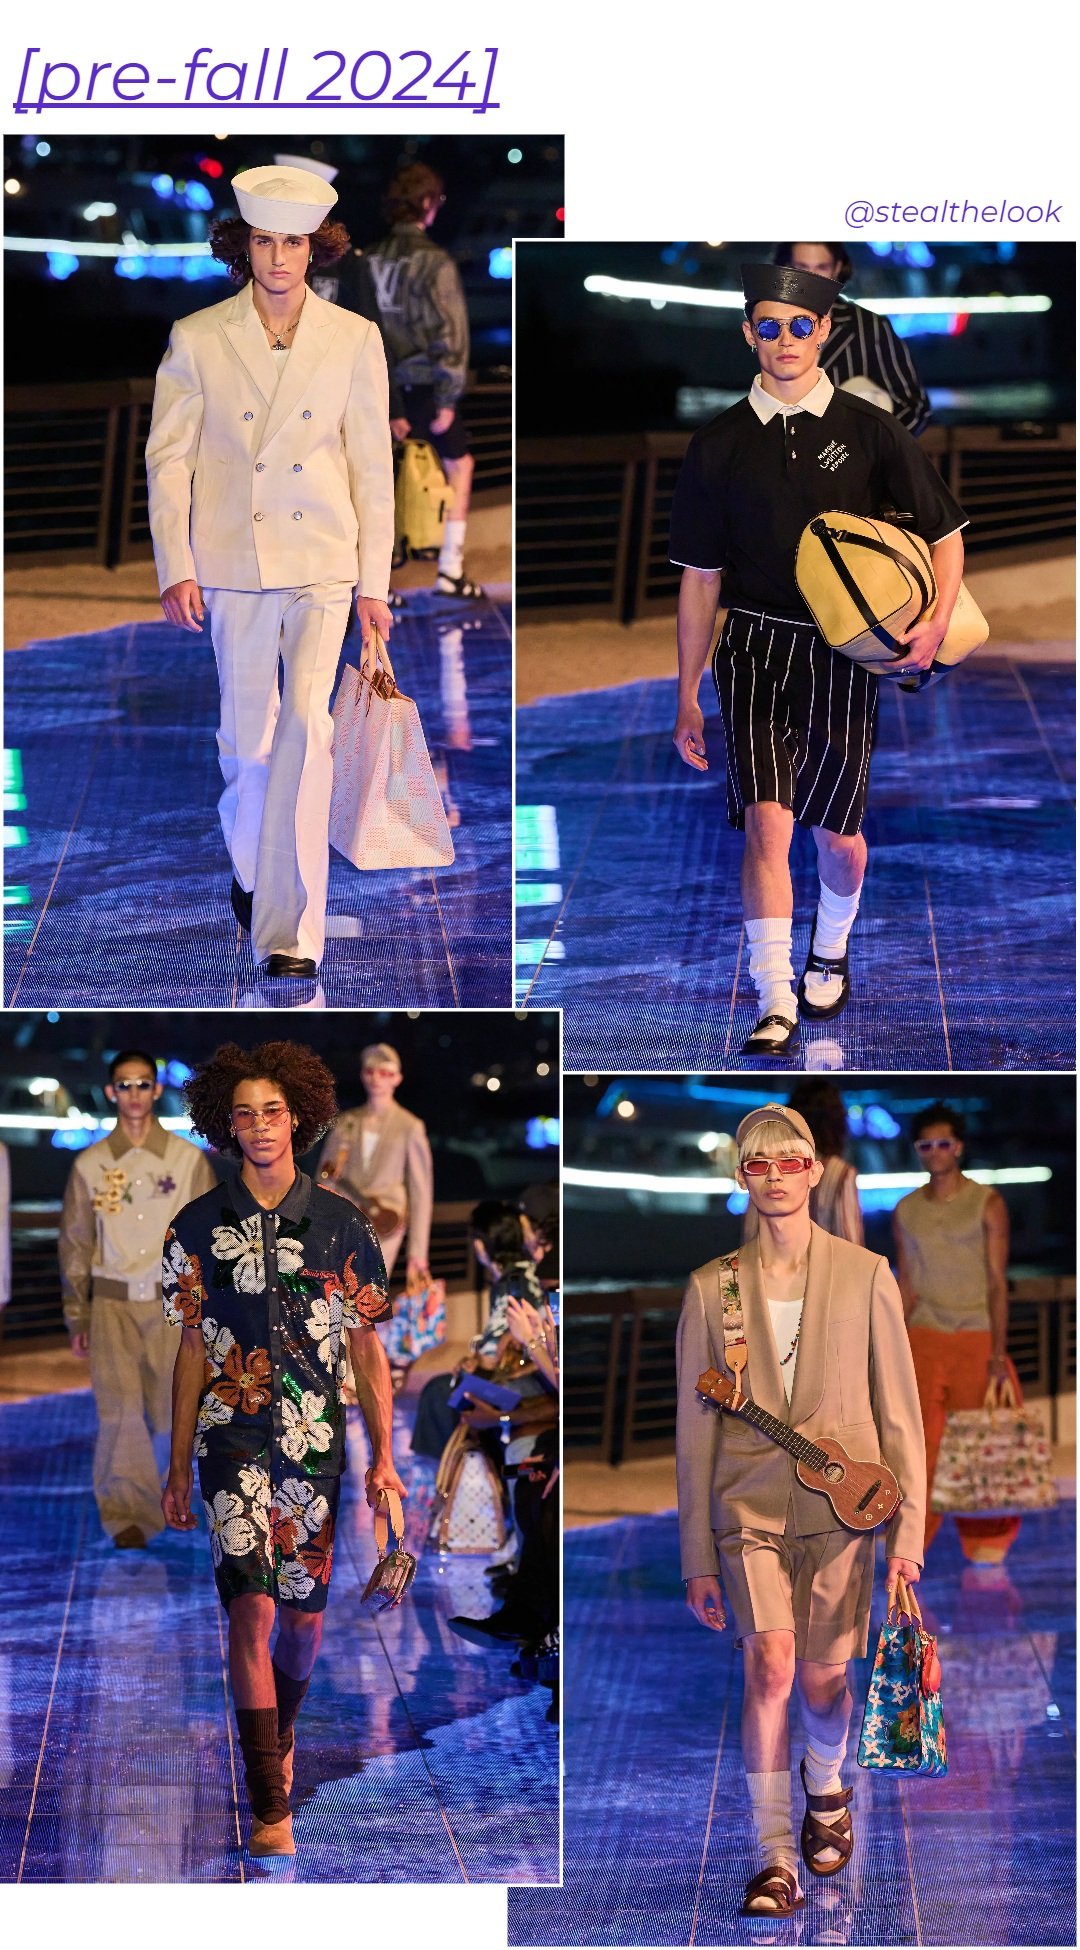 Coleção pre-fall 2024 Louis Vuitton - roupas diversas - Pharrell Williams - outono - colagem com 4 fotos diferentes da modelo andando - https://stealthelook.com.br